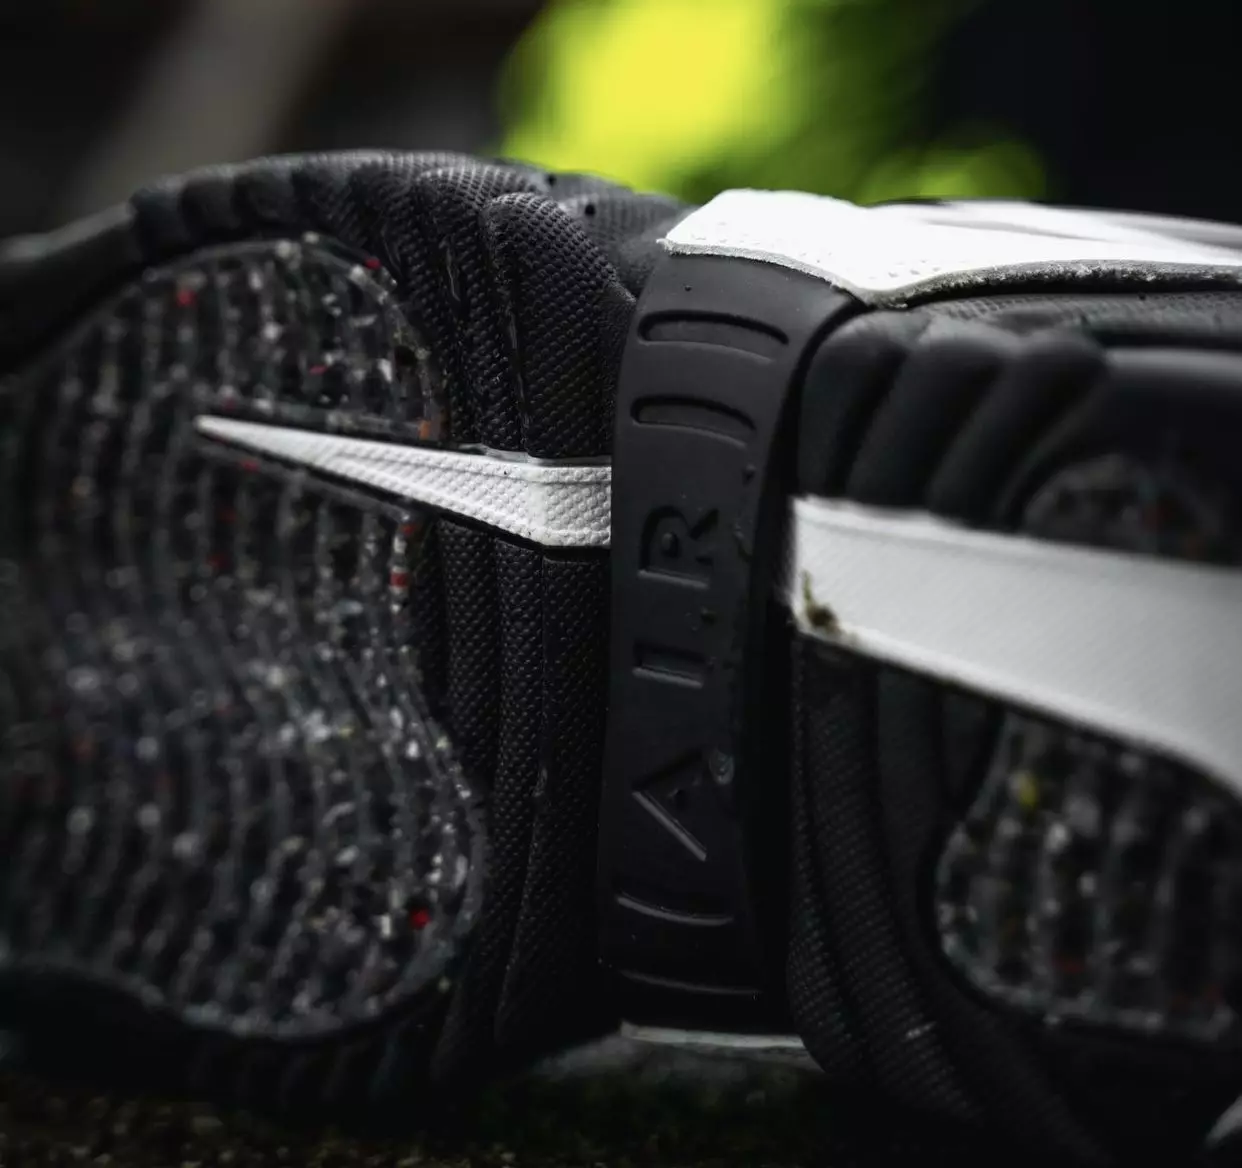 AMBUSH Nike Air Adjust Force לבן שחור תאריך יציאה מחיר